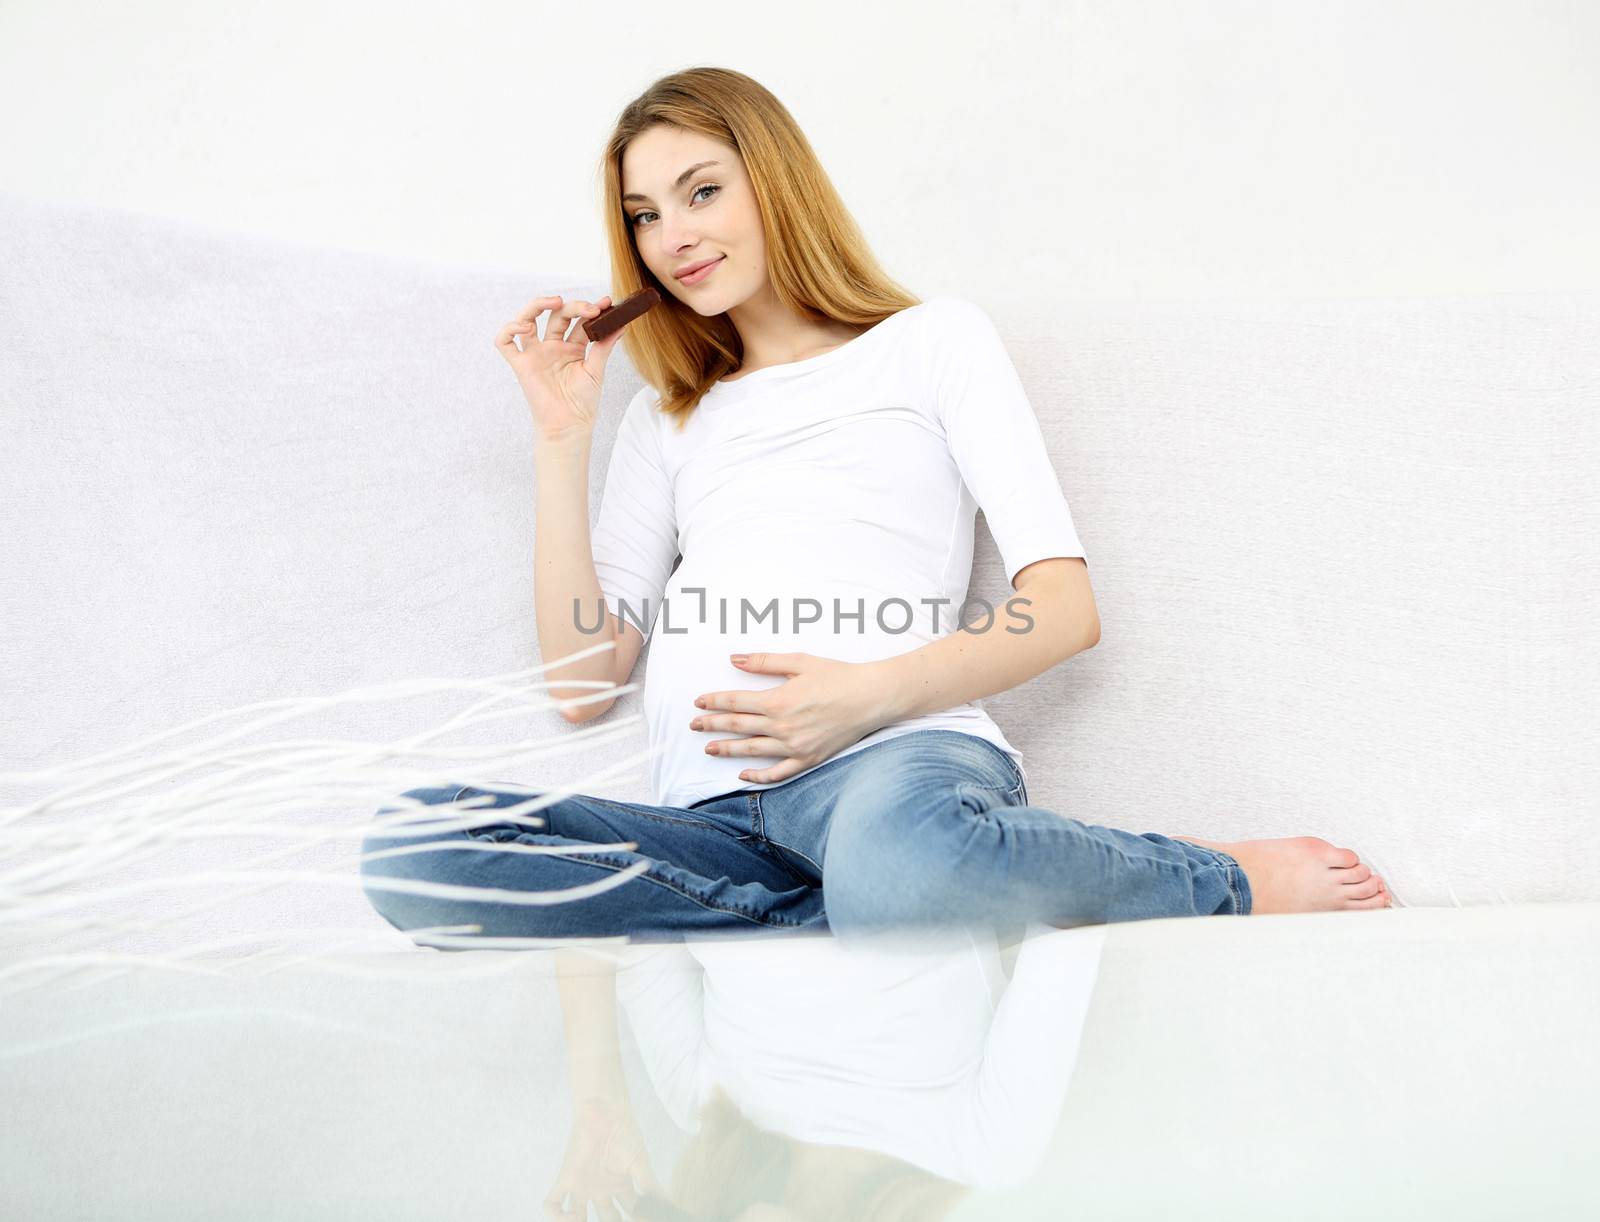 Pregnant woman by robert_przybysz